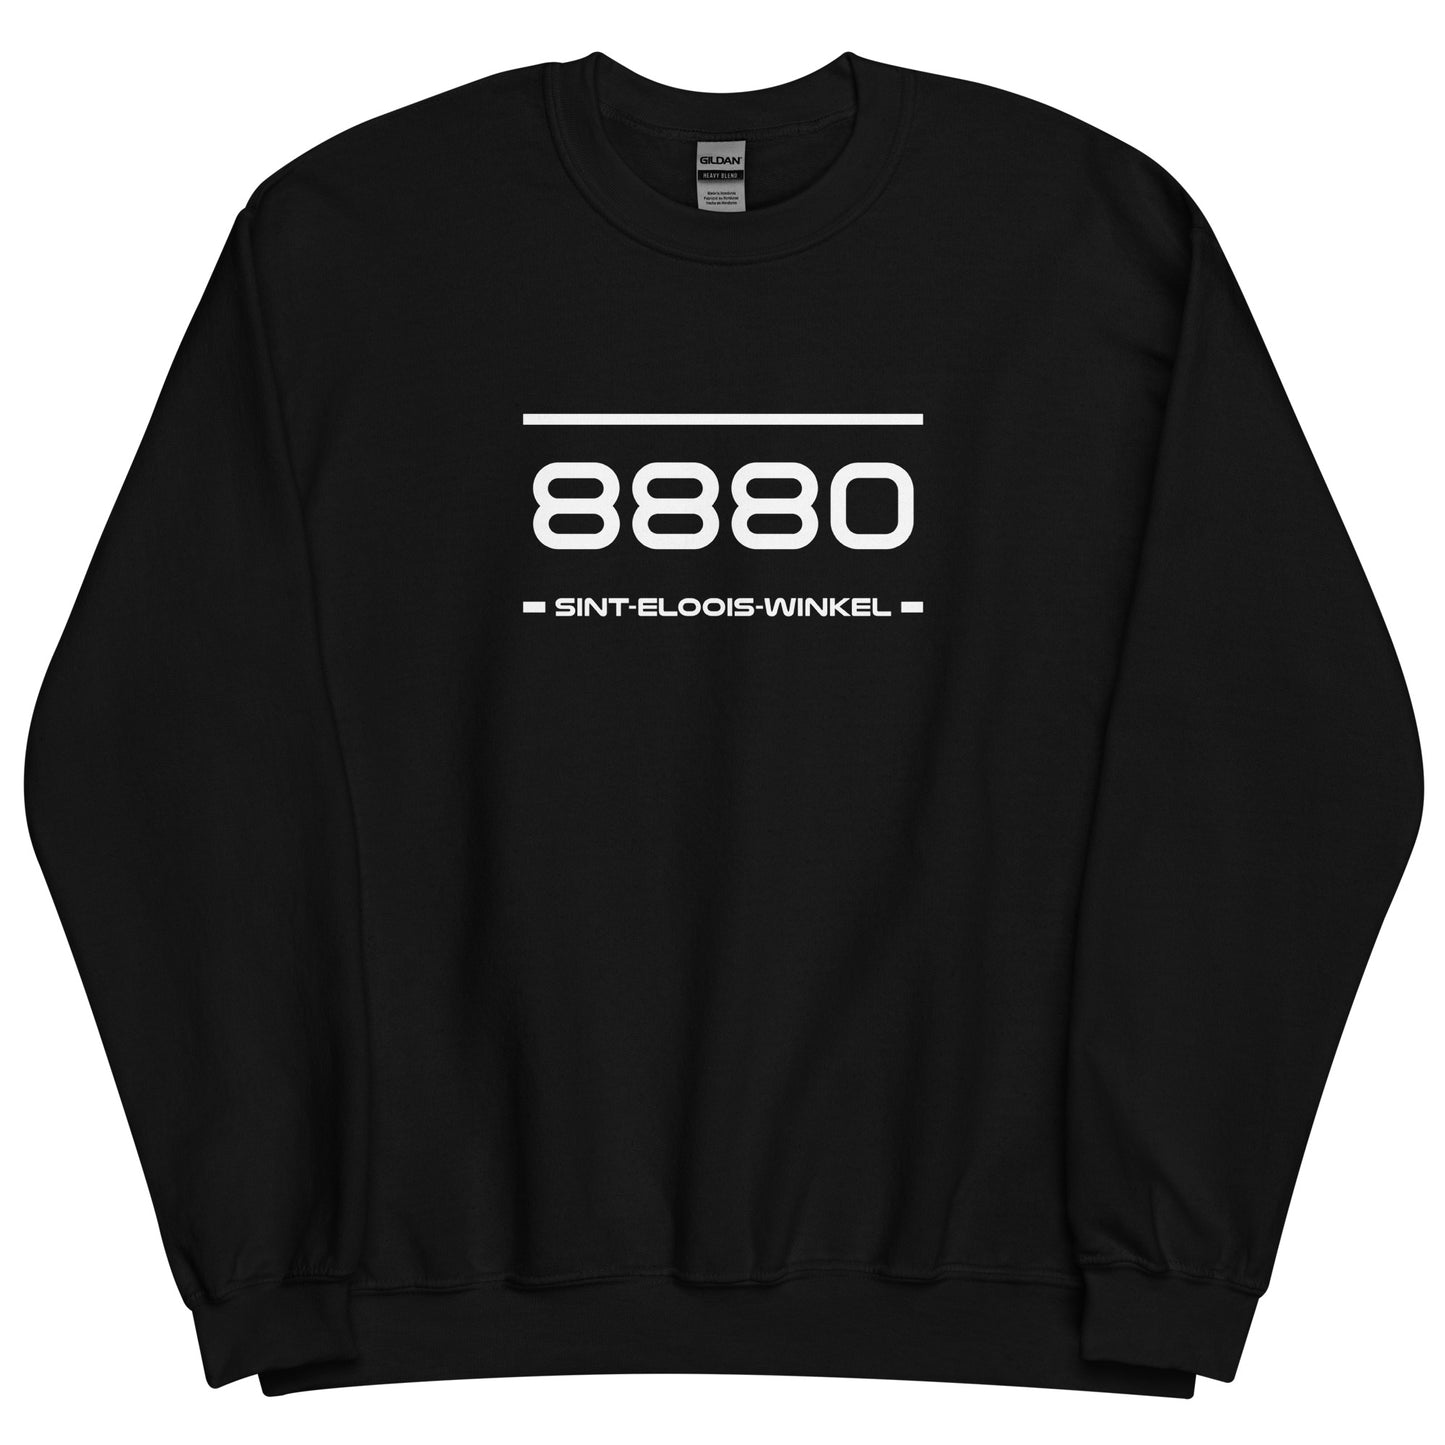 Sweater - 8800 - Sint-Eloois-Winkel (M/V)